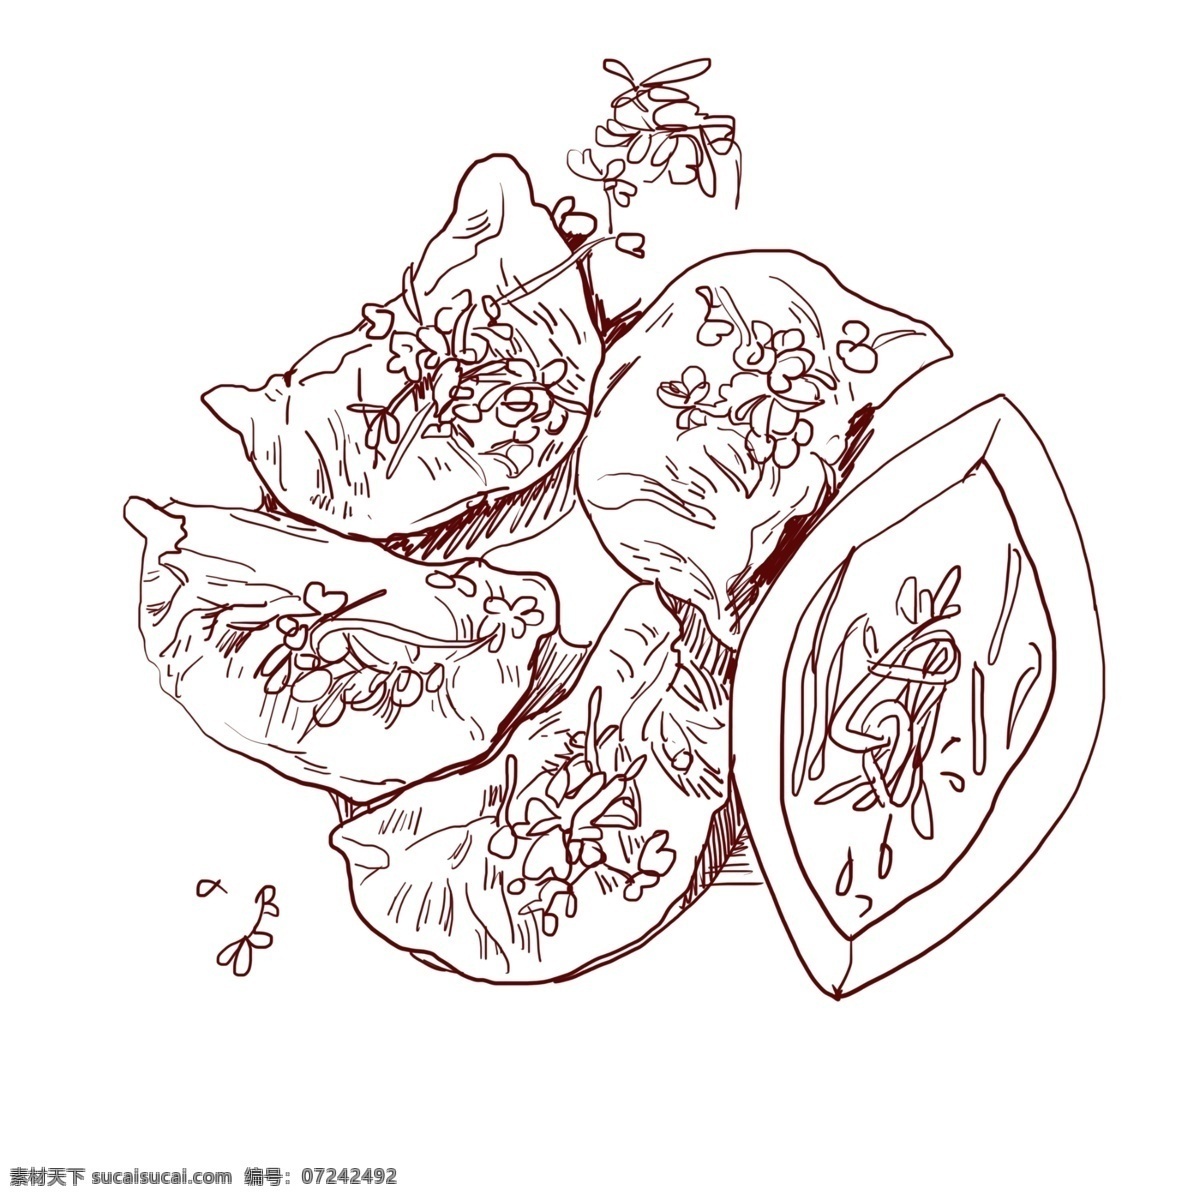 线描 美食 饺子 插画 美味的饺子 新年的饺子 春节的饺子 卡通插画 手绘美食插画 线描食物插画